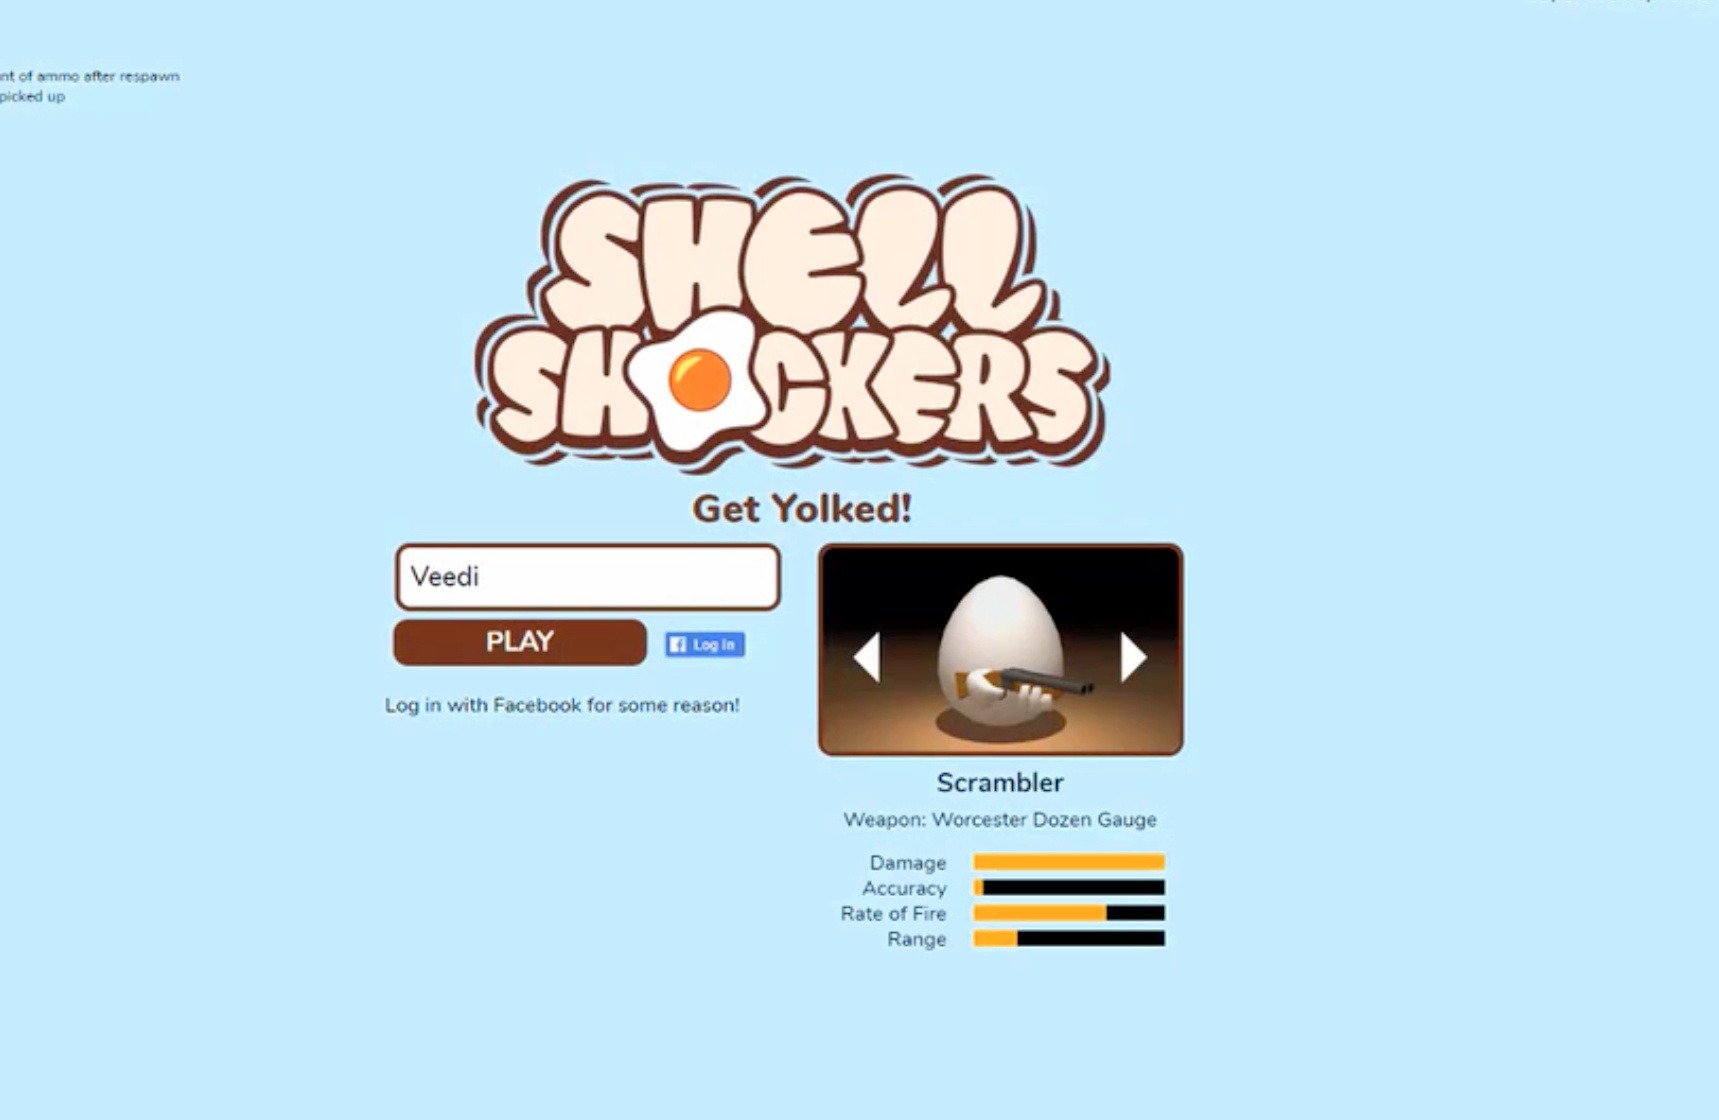 Shell shockers